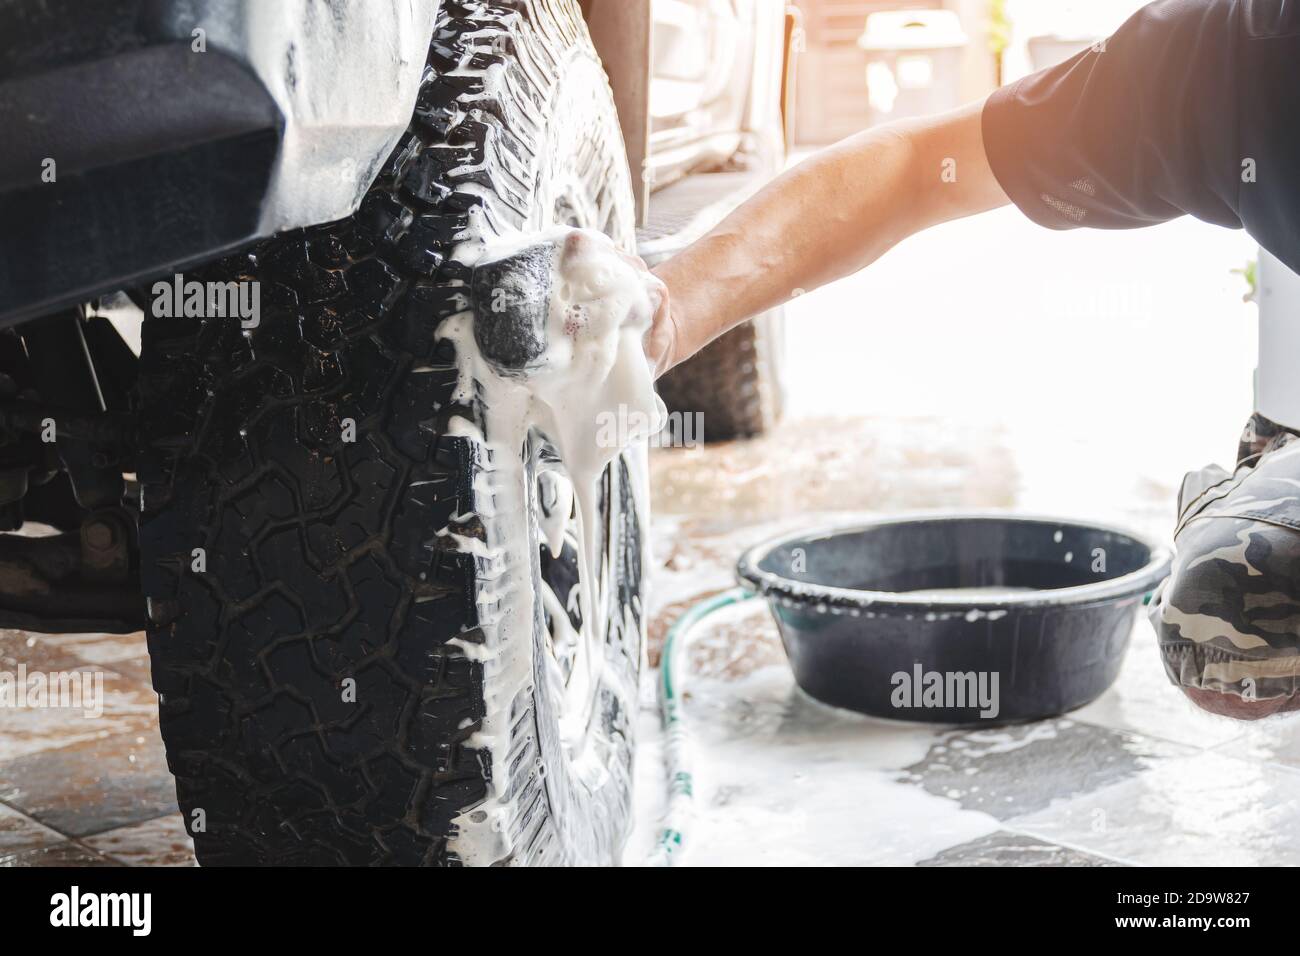 Le personnel de lavage de voiture utilise une éponge humidifiée avec du savon et de l'eau pour nettoyer les roues de la voiture. Banque D'Images